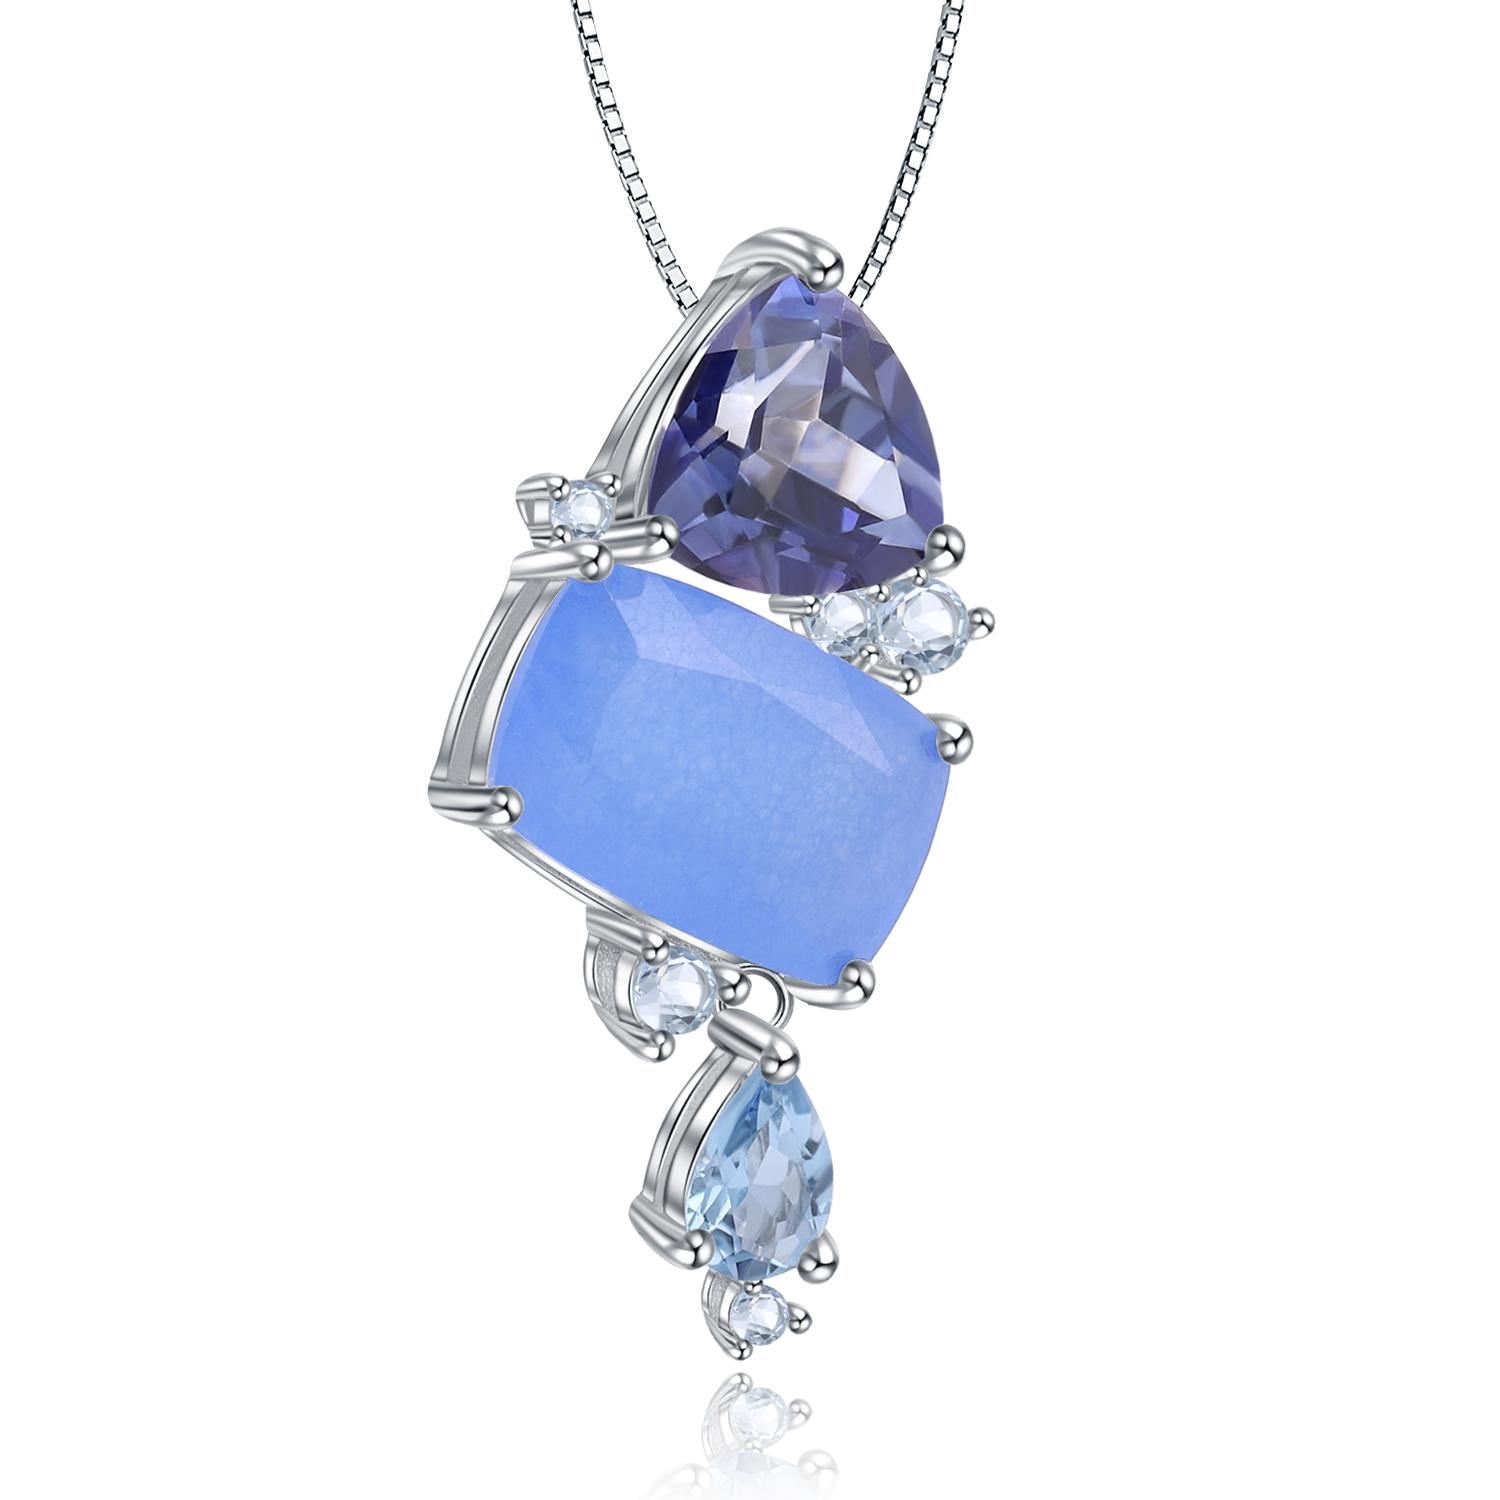 Изображение товара: Женский топаз из серебра 925 пробы GEM'S BALLET, ожерелье с кварцевым кулоном из карамельного топаза, ювелирное изделие с натуральным драгоценным камнем Аква-синего цвета